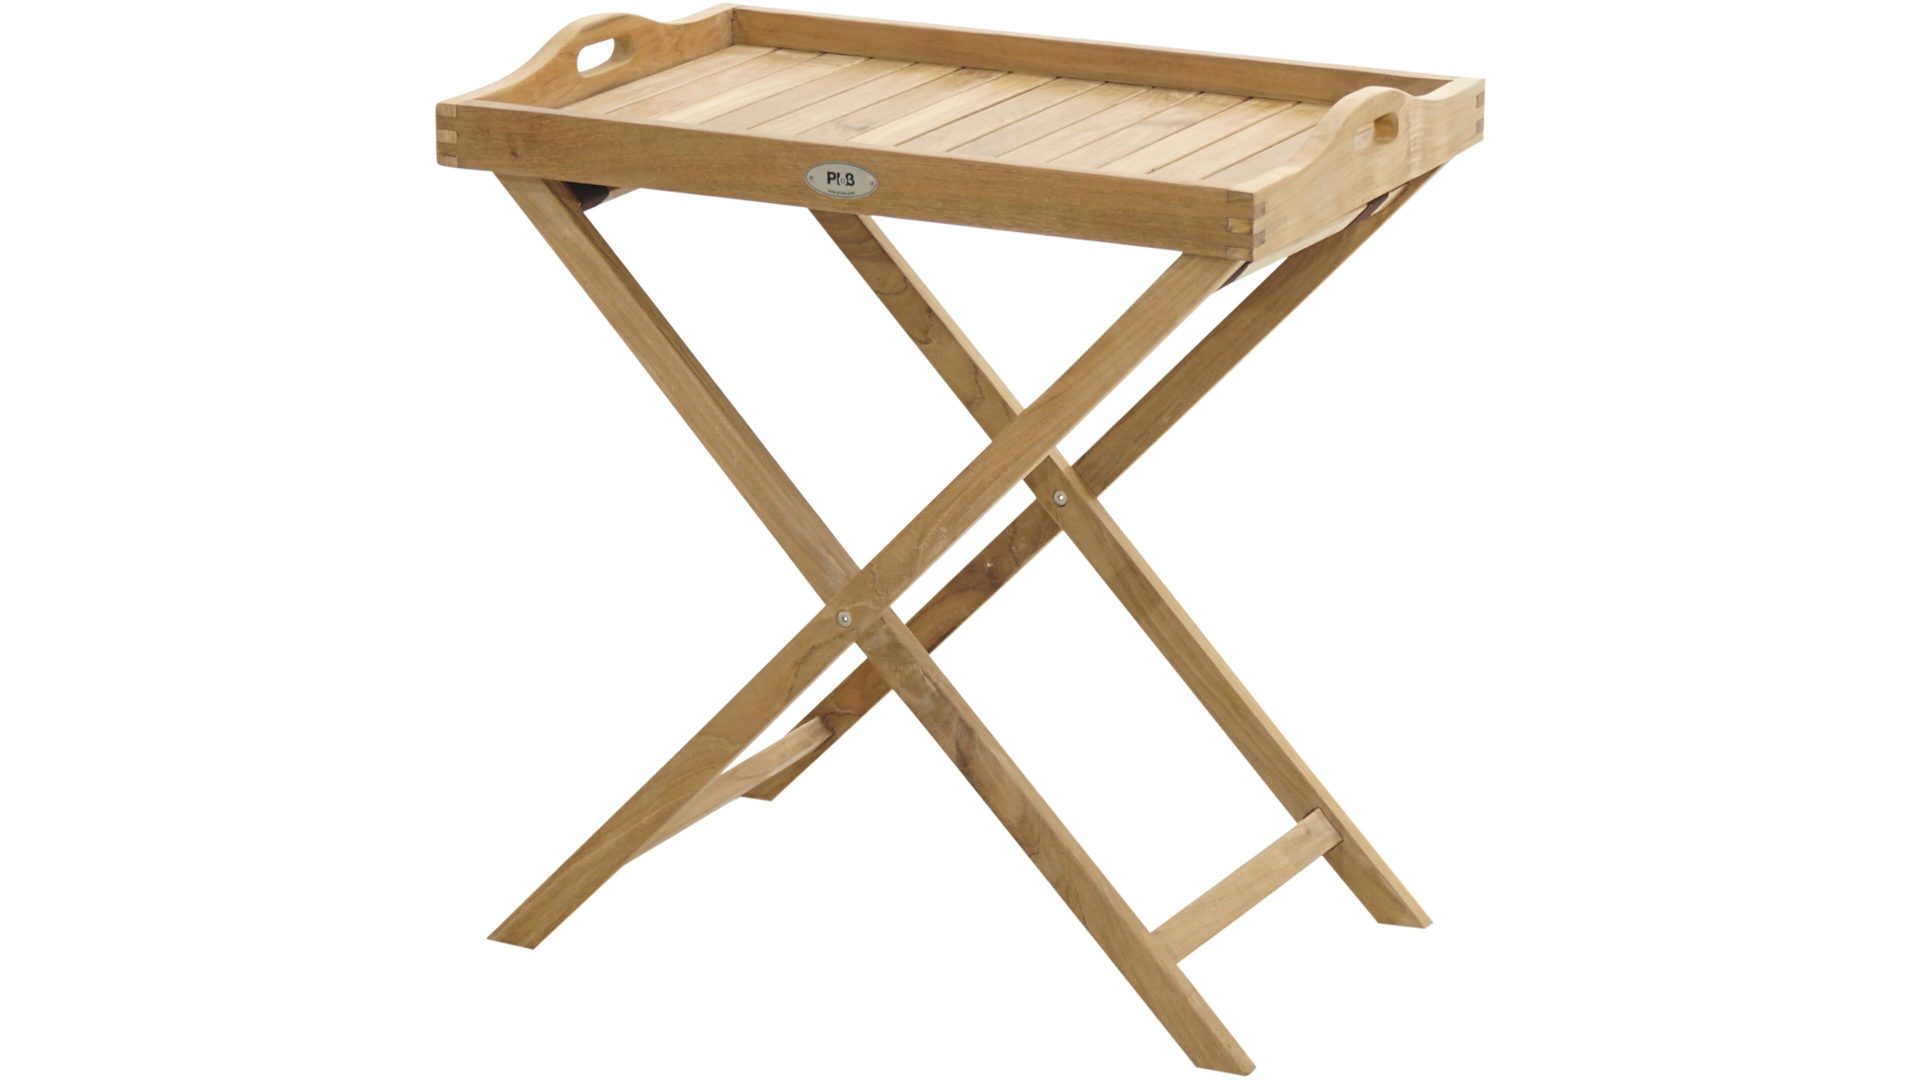 Gartentisch Ploß aus Holz in Holzfarben Ploß® Teakholz-Tabletttisch York als Gartenmöbel honigfarbenes Teakholz – ca. 68 x 45 cm